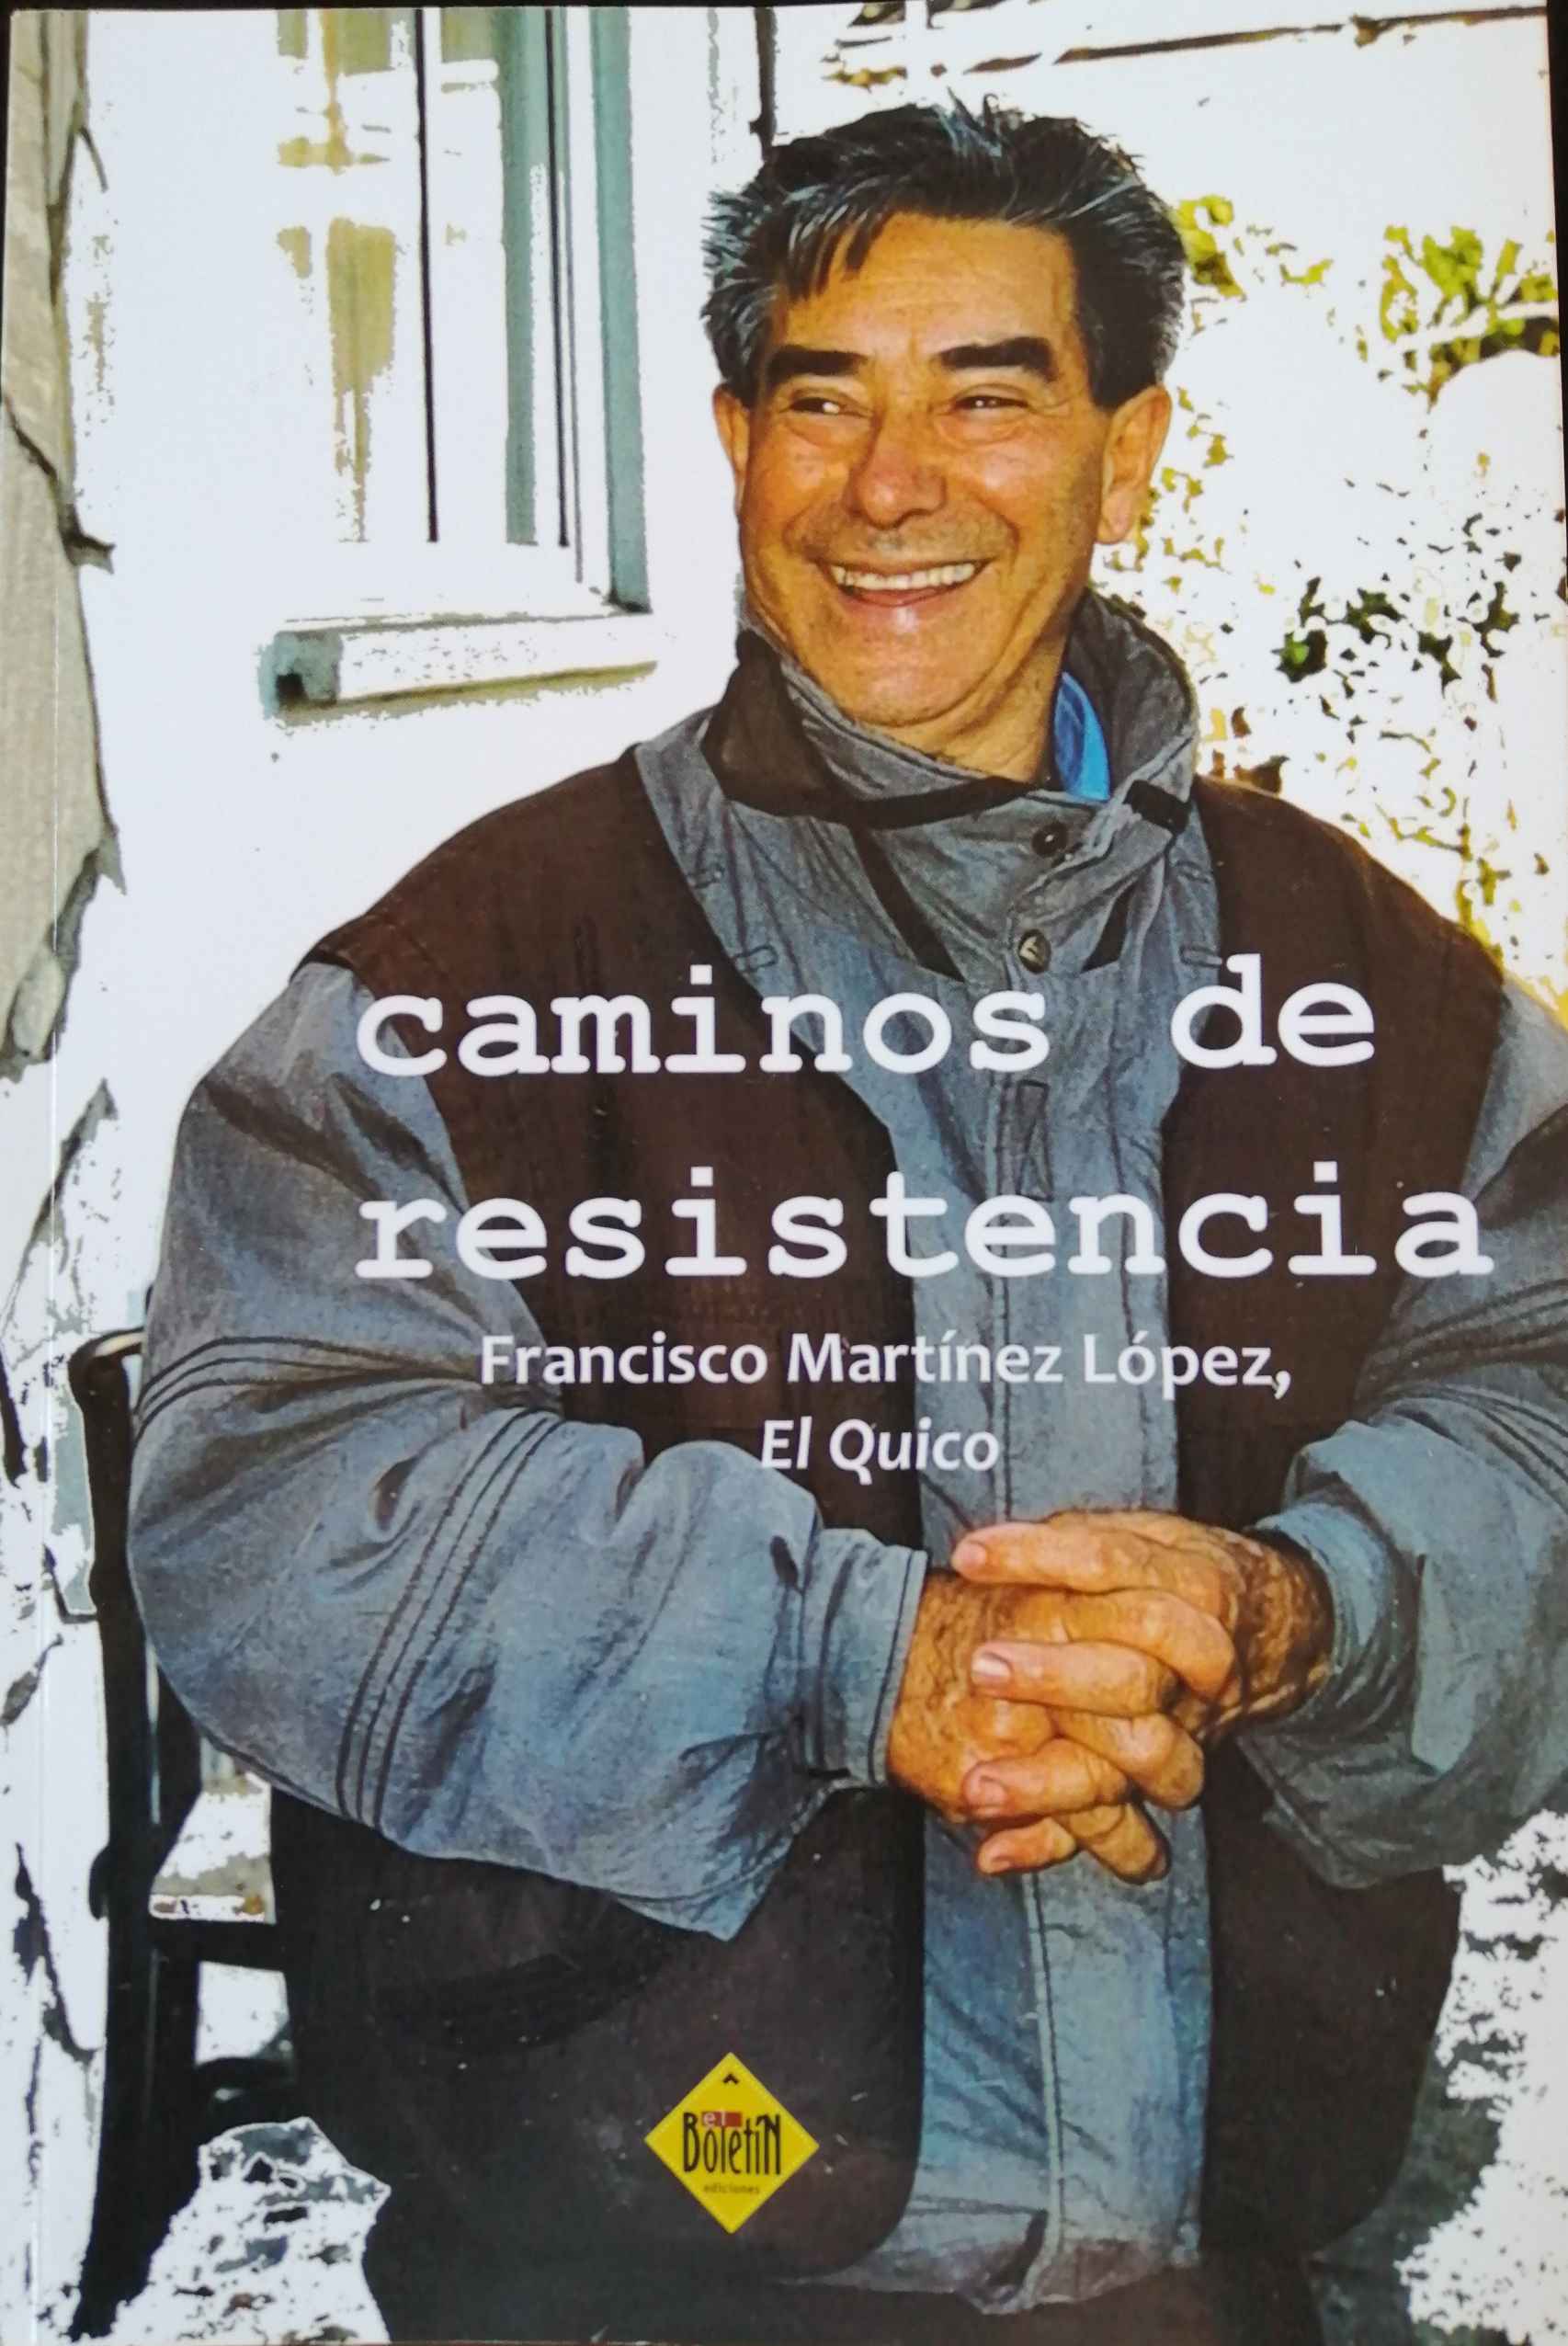 Portada del libro de Francisco Martínez López, El Quico, donde aparece en una foto de 2002.